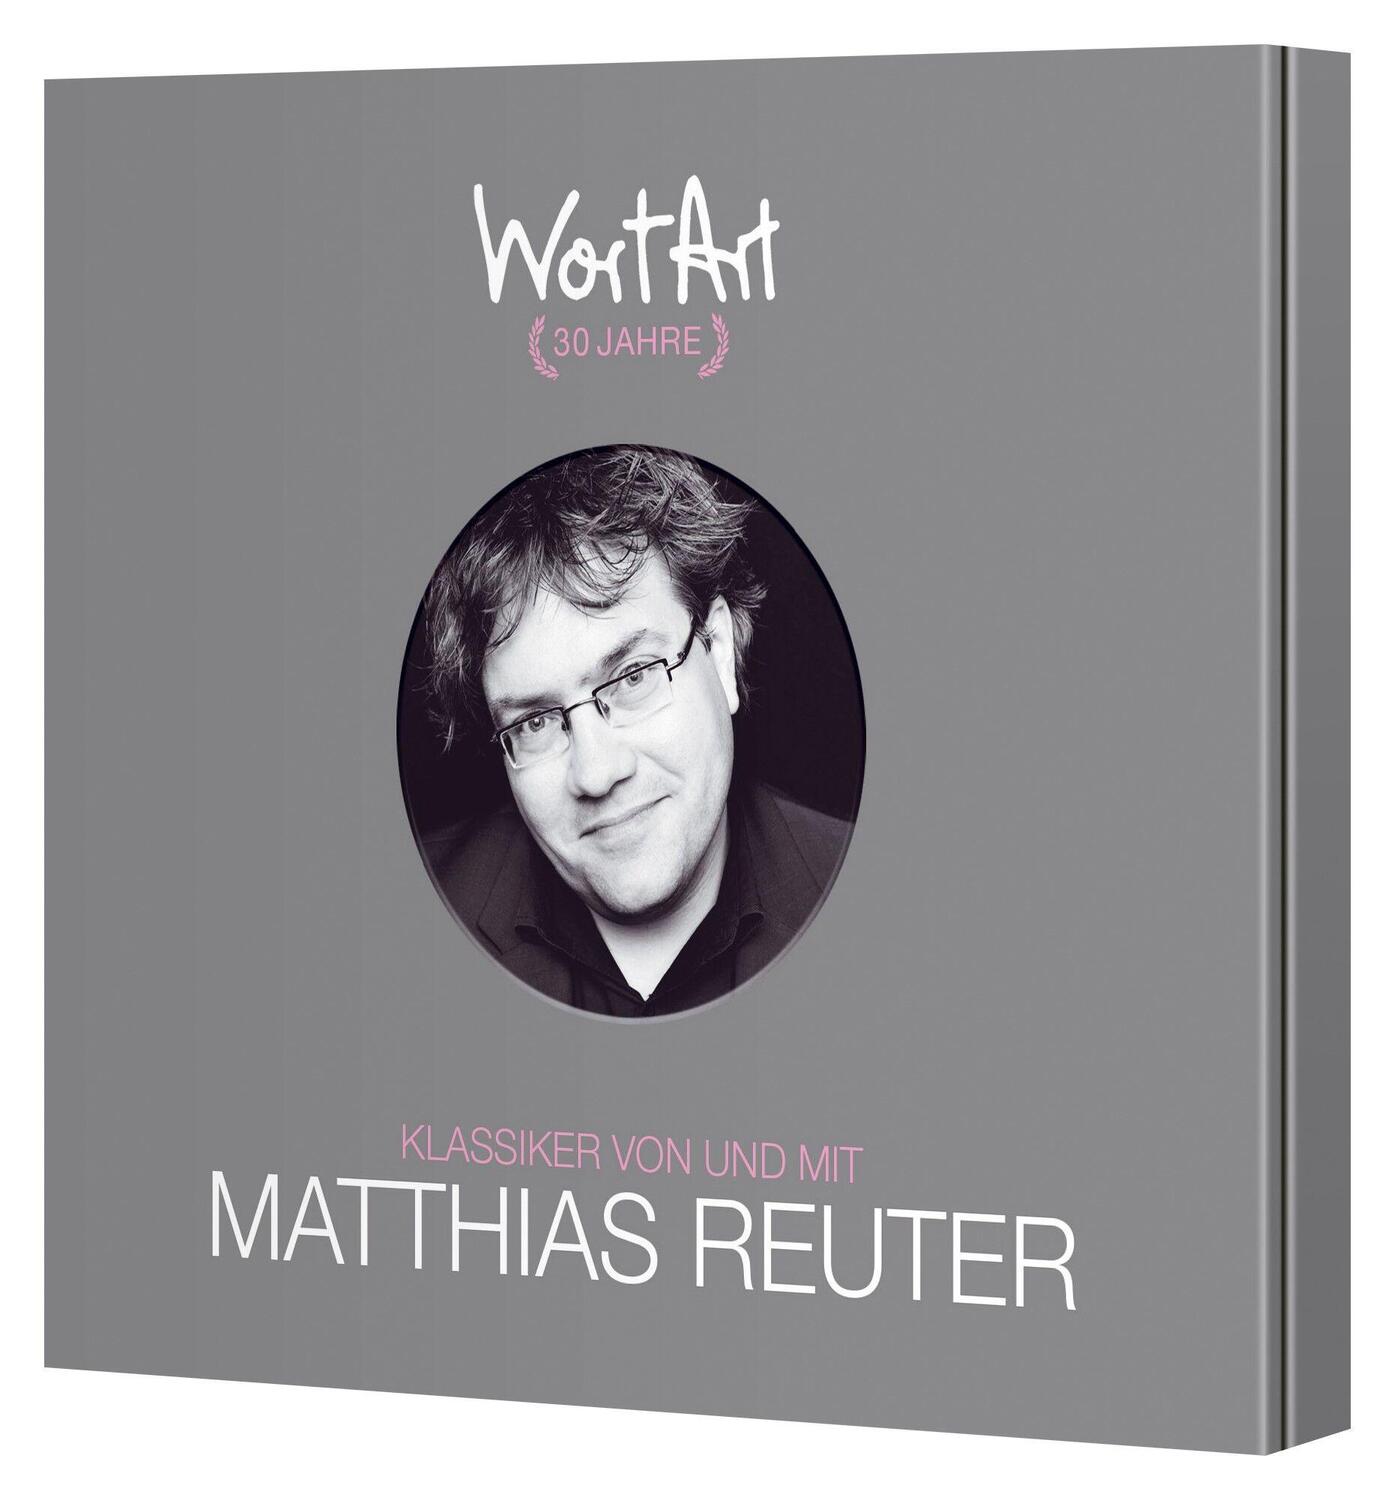 Bild: 9783837166125 | 30 Jahre WortArt - Klassiker von und mit Matthias Reuter | WortArt